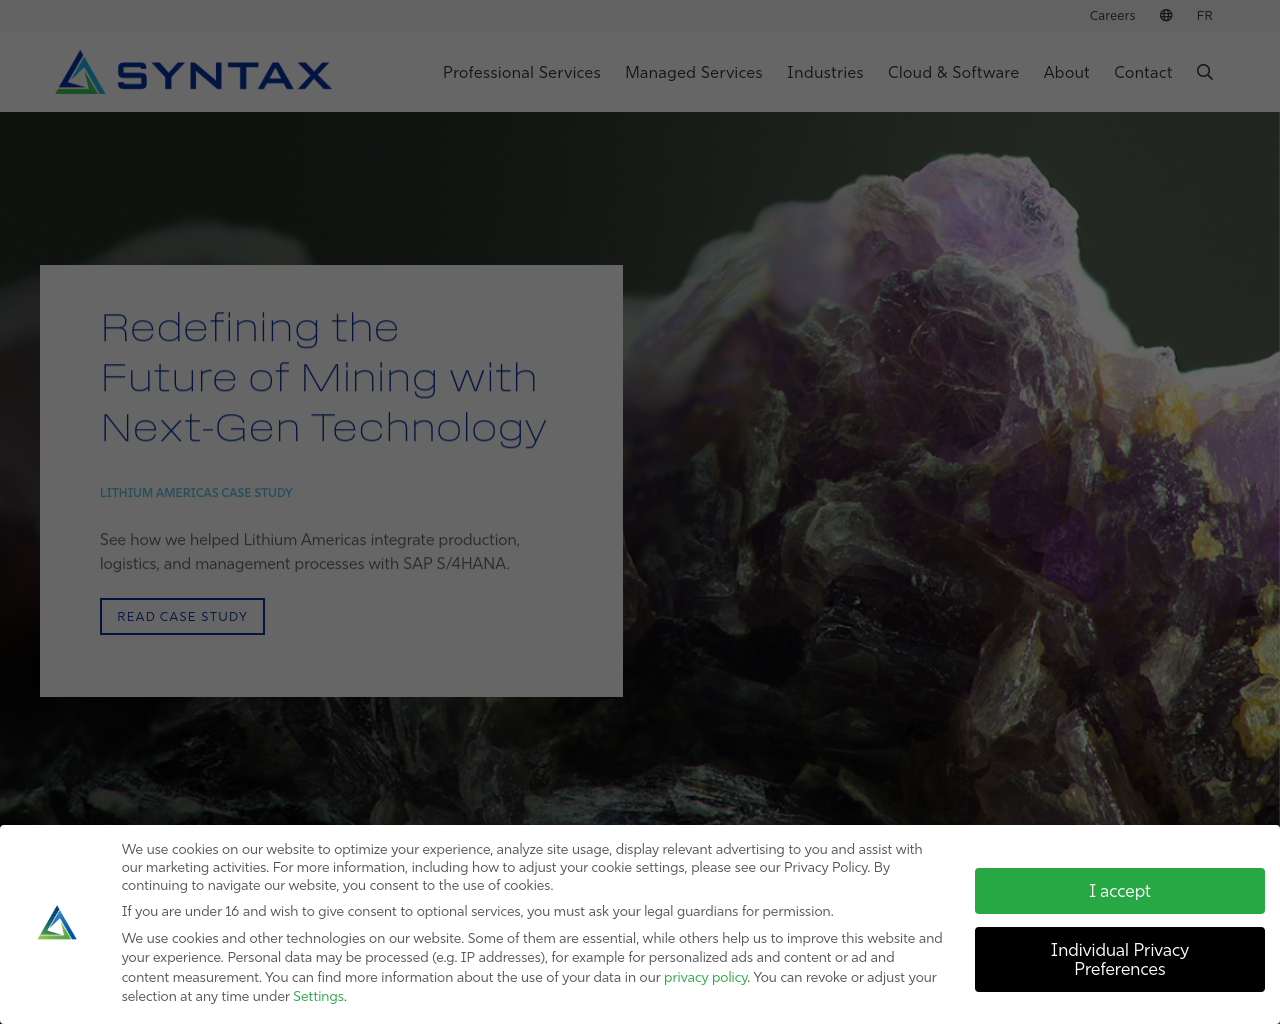 syntax.com